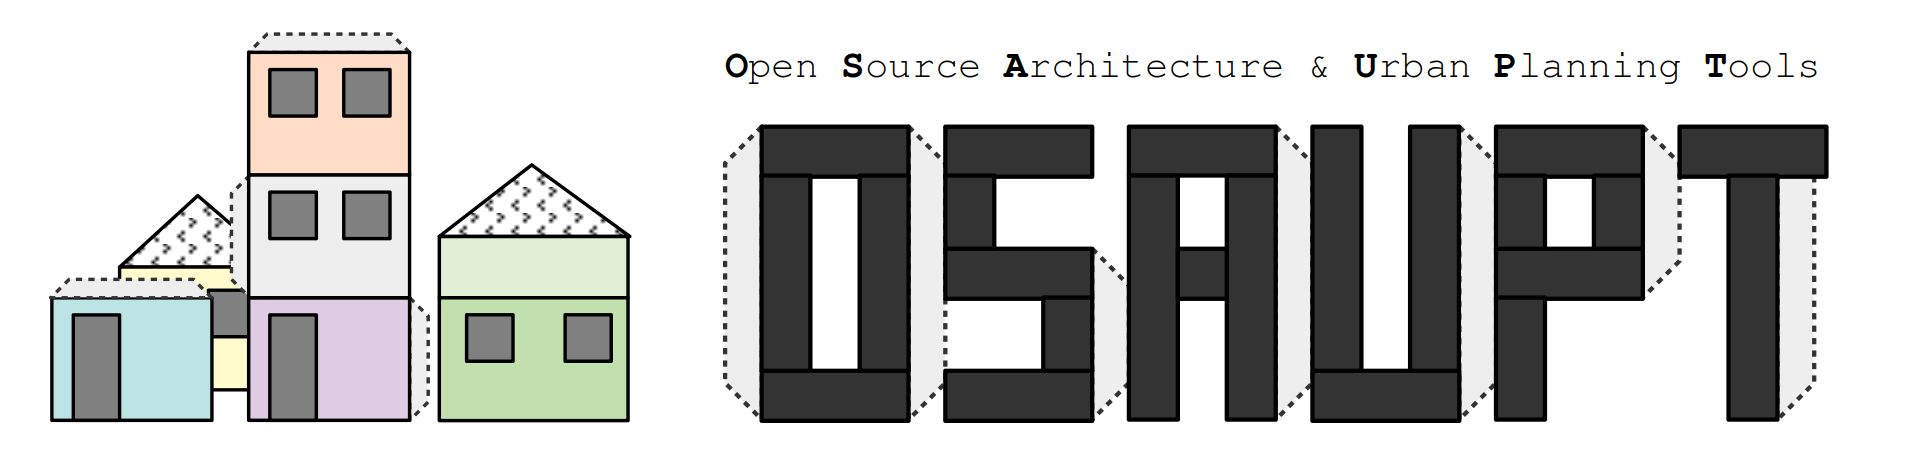 OSAUPT-logo3-1.jpg